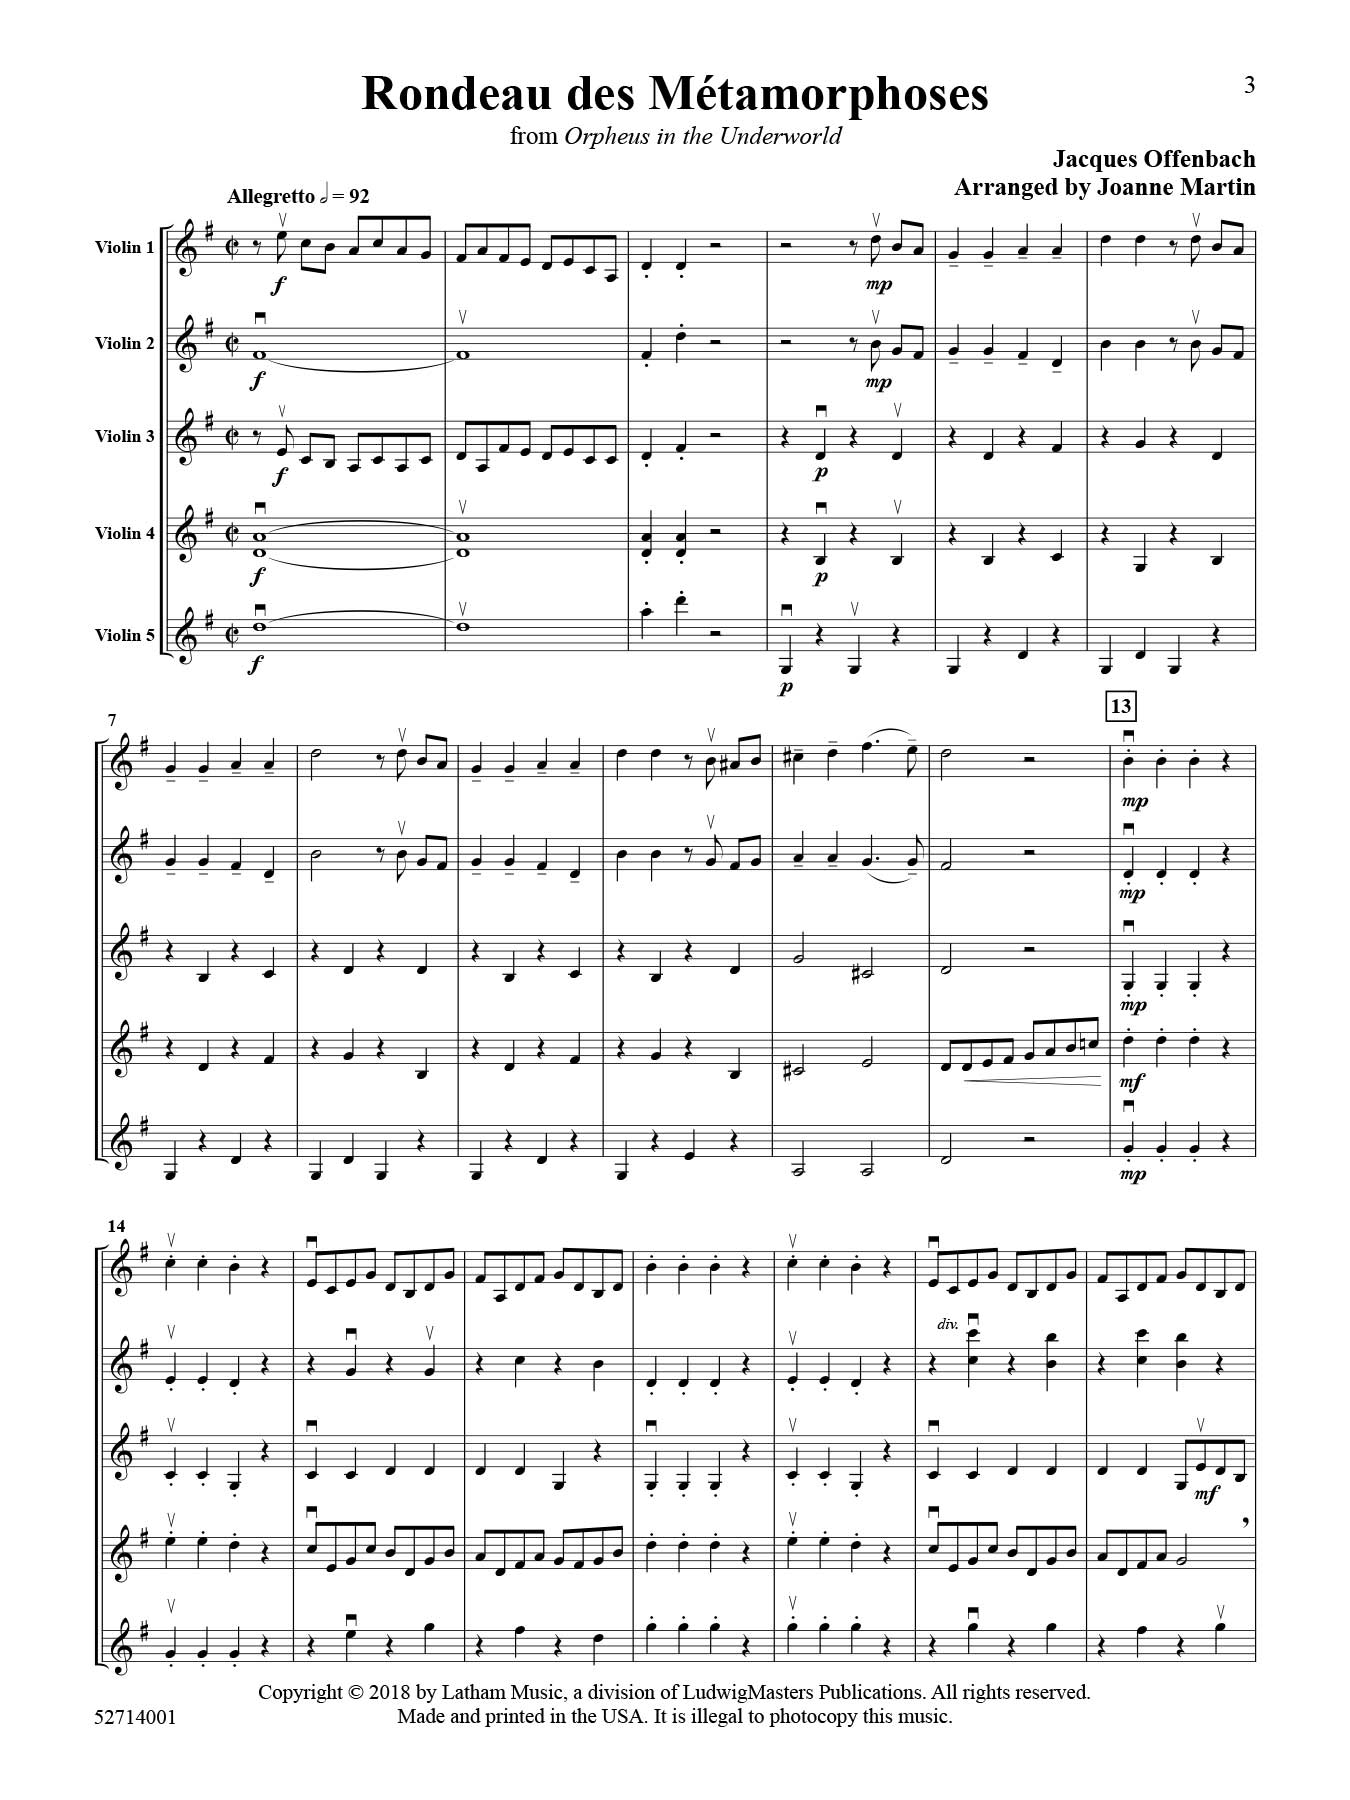 rondeau-des-metamorphoses-cancan-violin-quintet-score.jpg